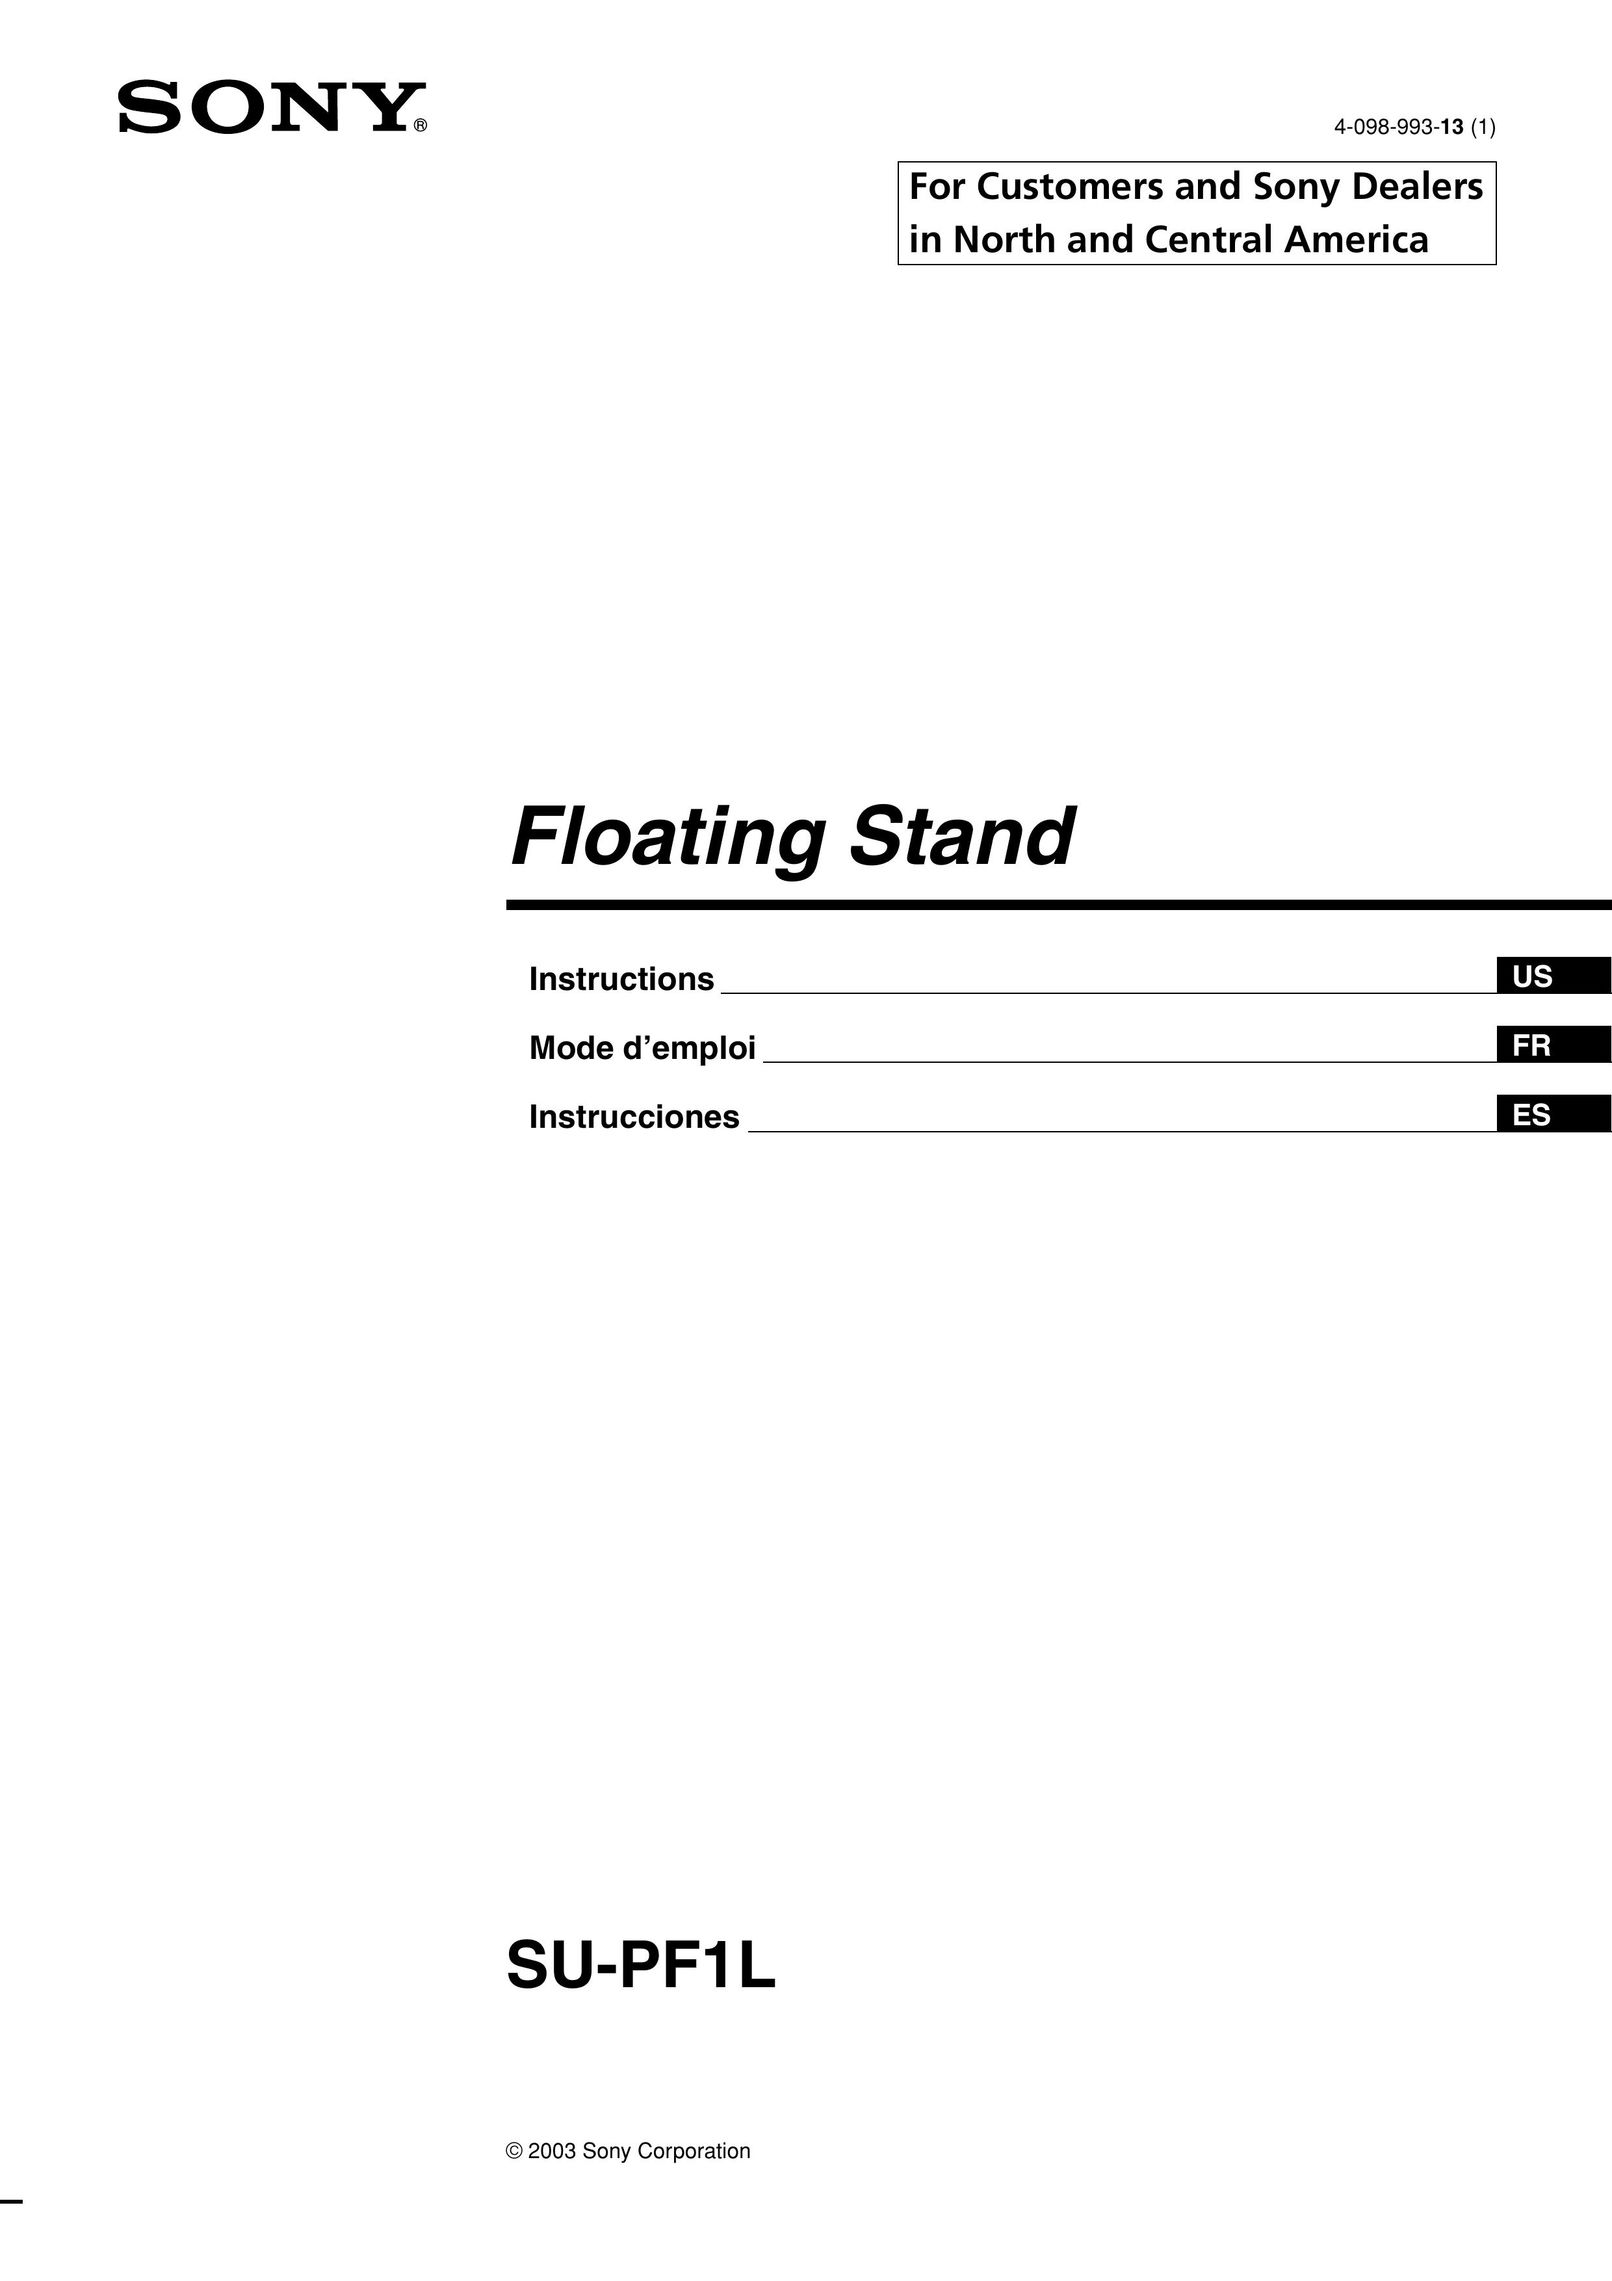 Sony SU-PF1L Indoor Furnishings User Manual